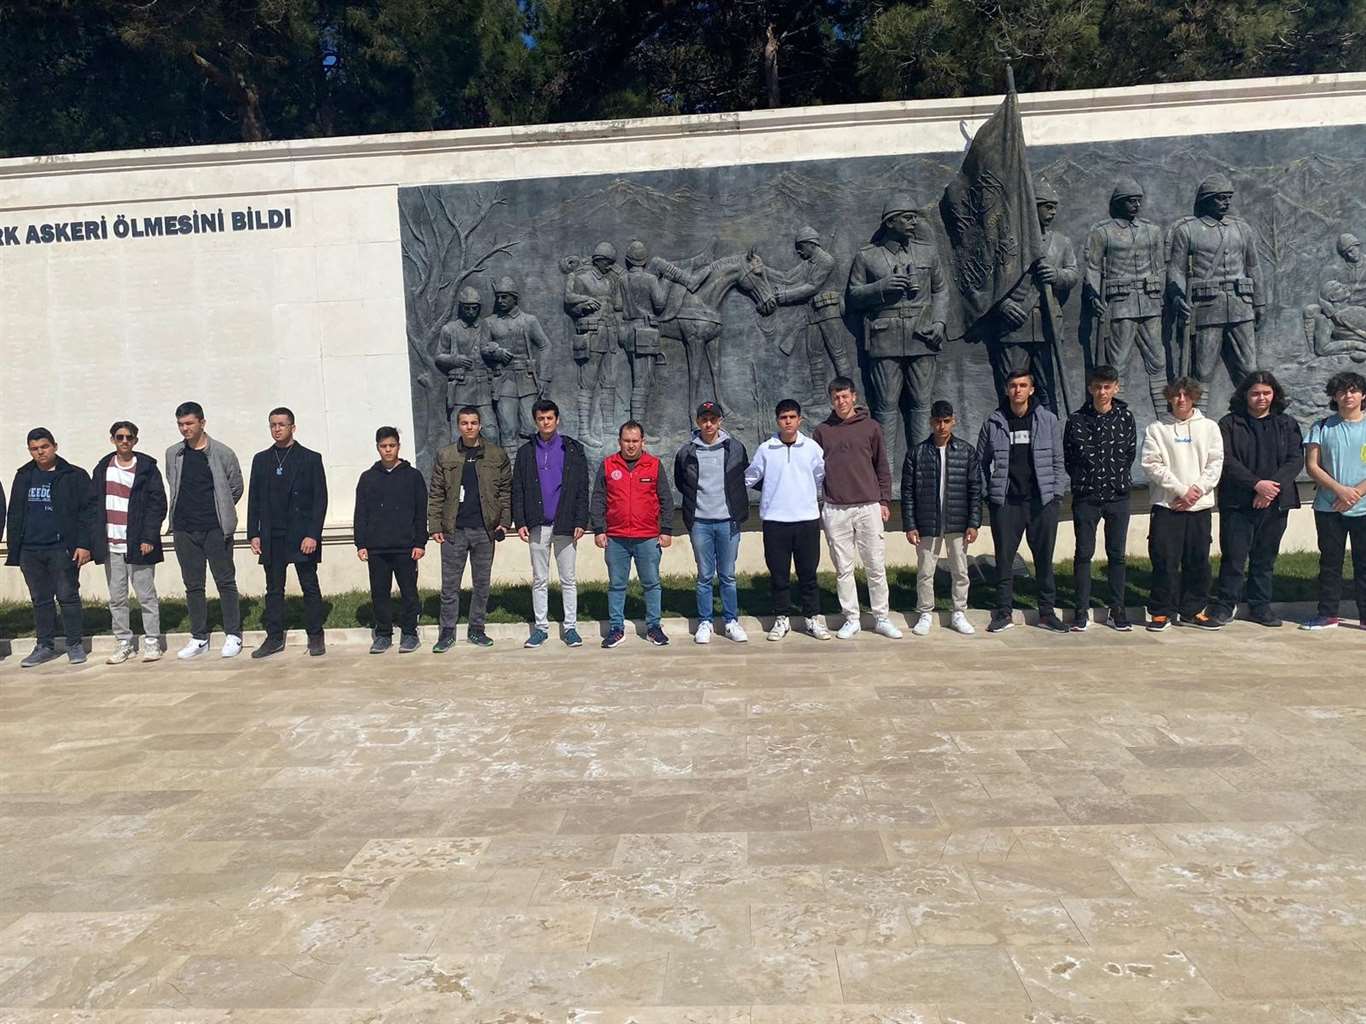 Muğlalı gençler Çanakkale'de tarih kültür medeniyet kampına katıldı haberi